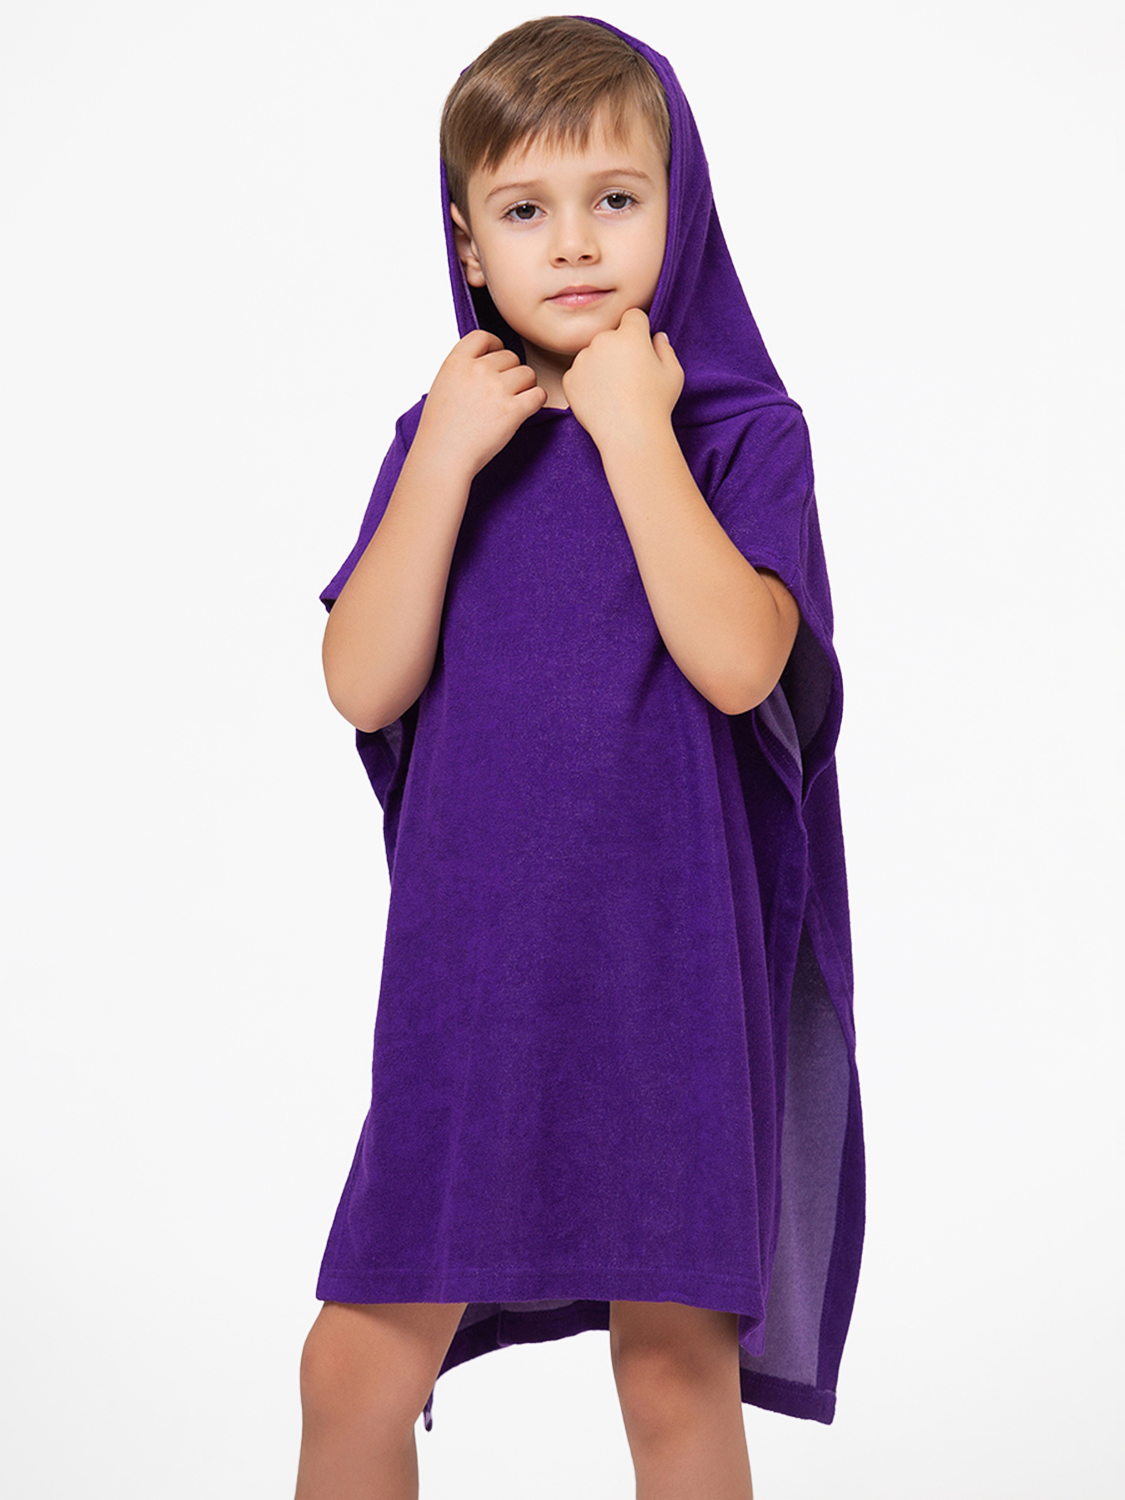 фото Полотенце детское happyfox пончно hfg2019 размер 61x52 см, фиолетовый